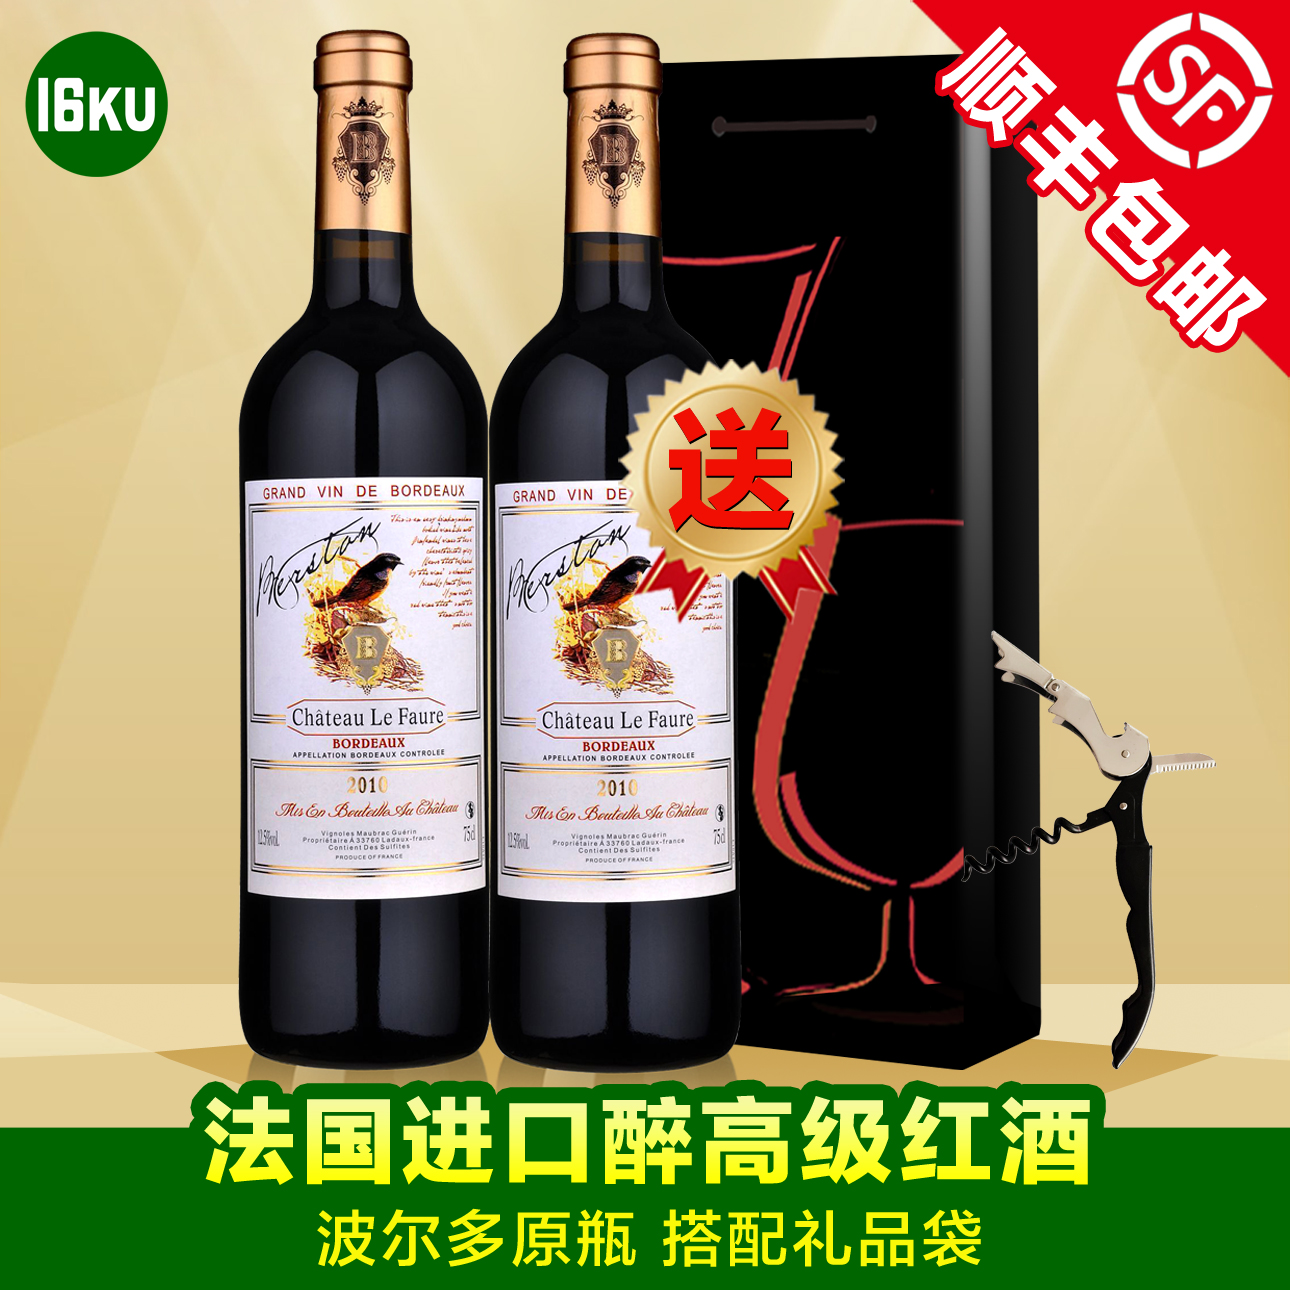 爵士珍藏级原装干红正品葡萄酒法国原瓶进口红酒包邮双支送礼品